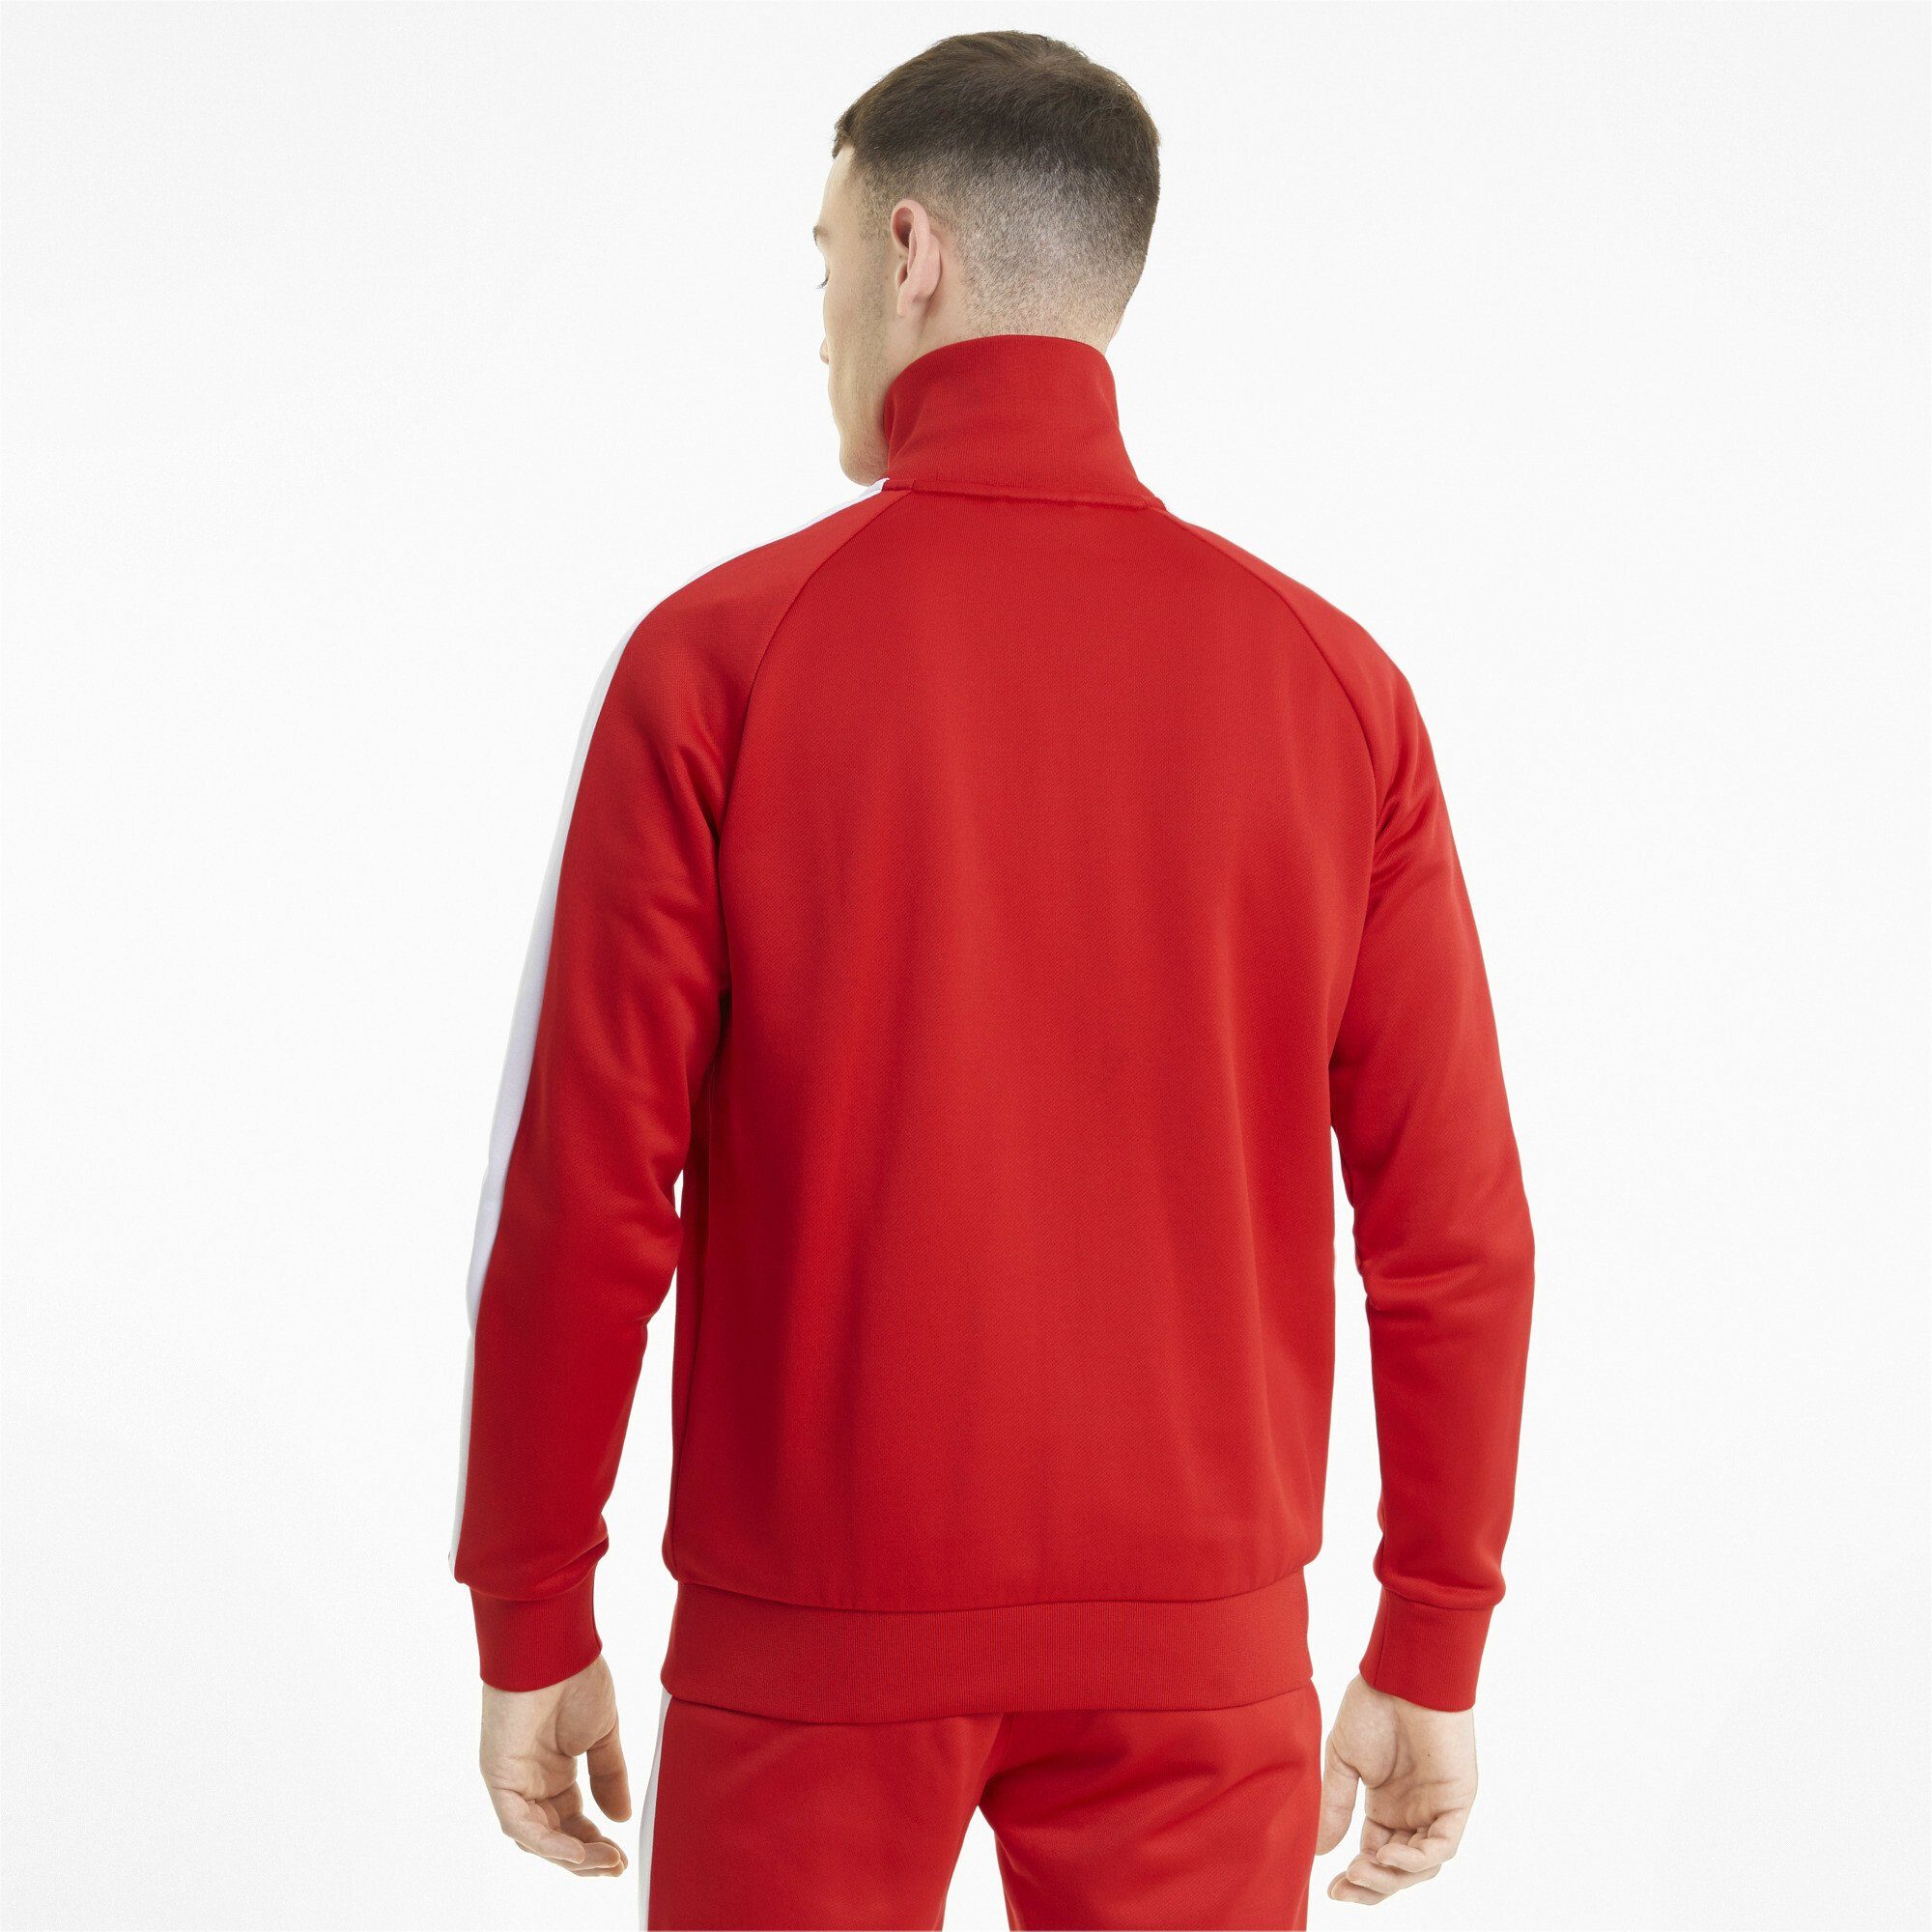 PUMA Herren T7 High Risk Trainingsjacke Trainingsjacke Red Iconic